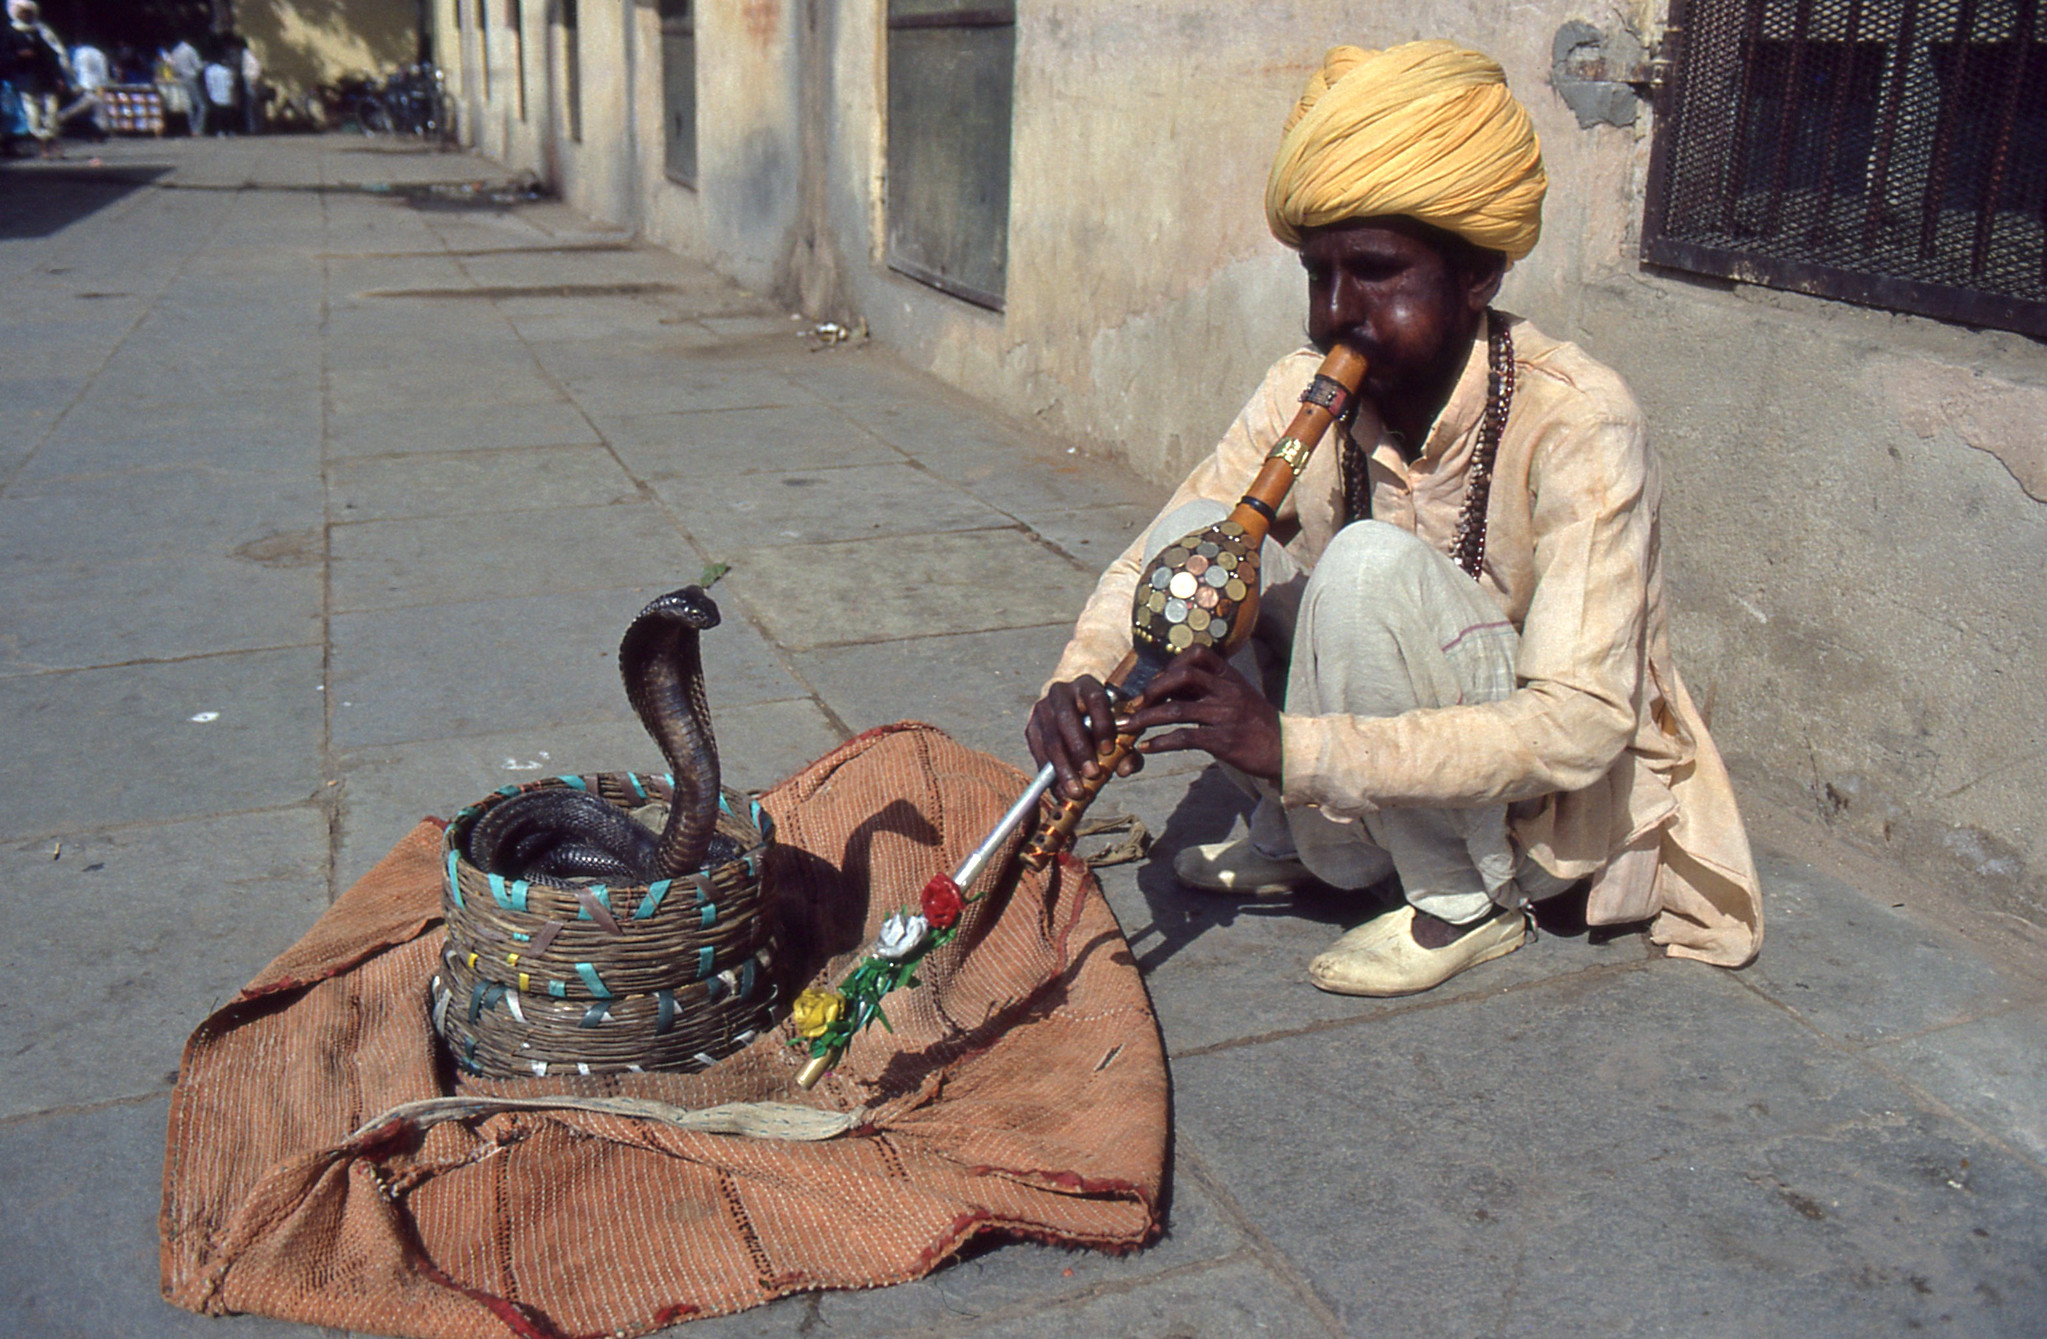 Encantador de cobras indias tocando la flauta a una cobra